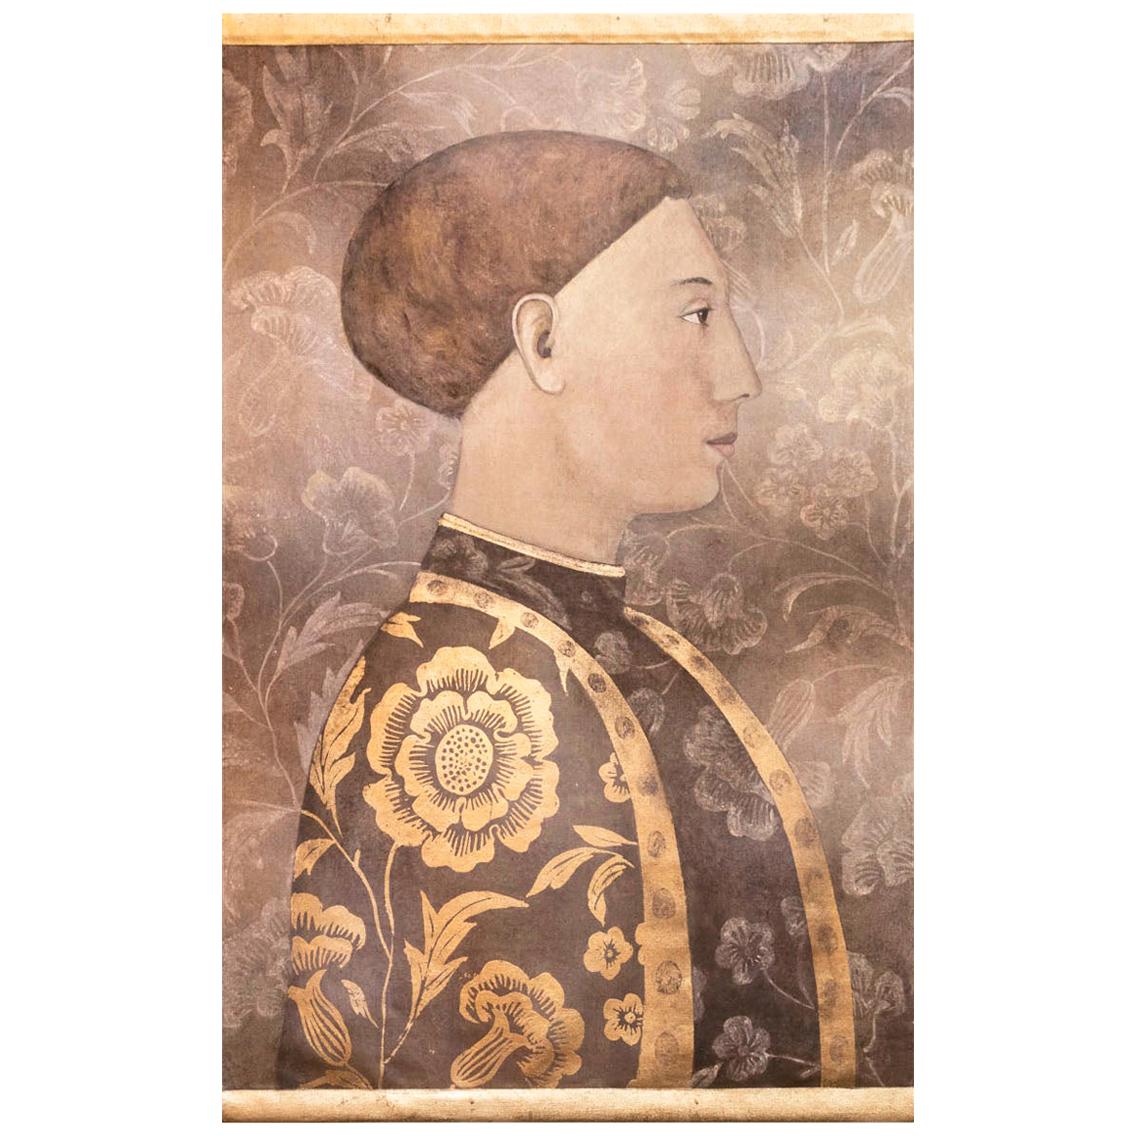 Bemalte Leinwand, Renaissance-Porträt eines Mannes, zeitgenössisches Werk